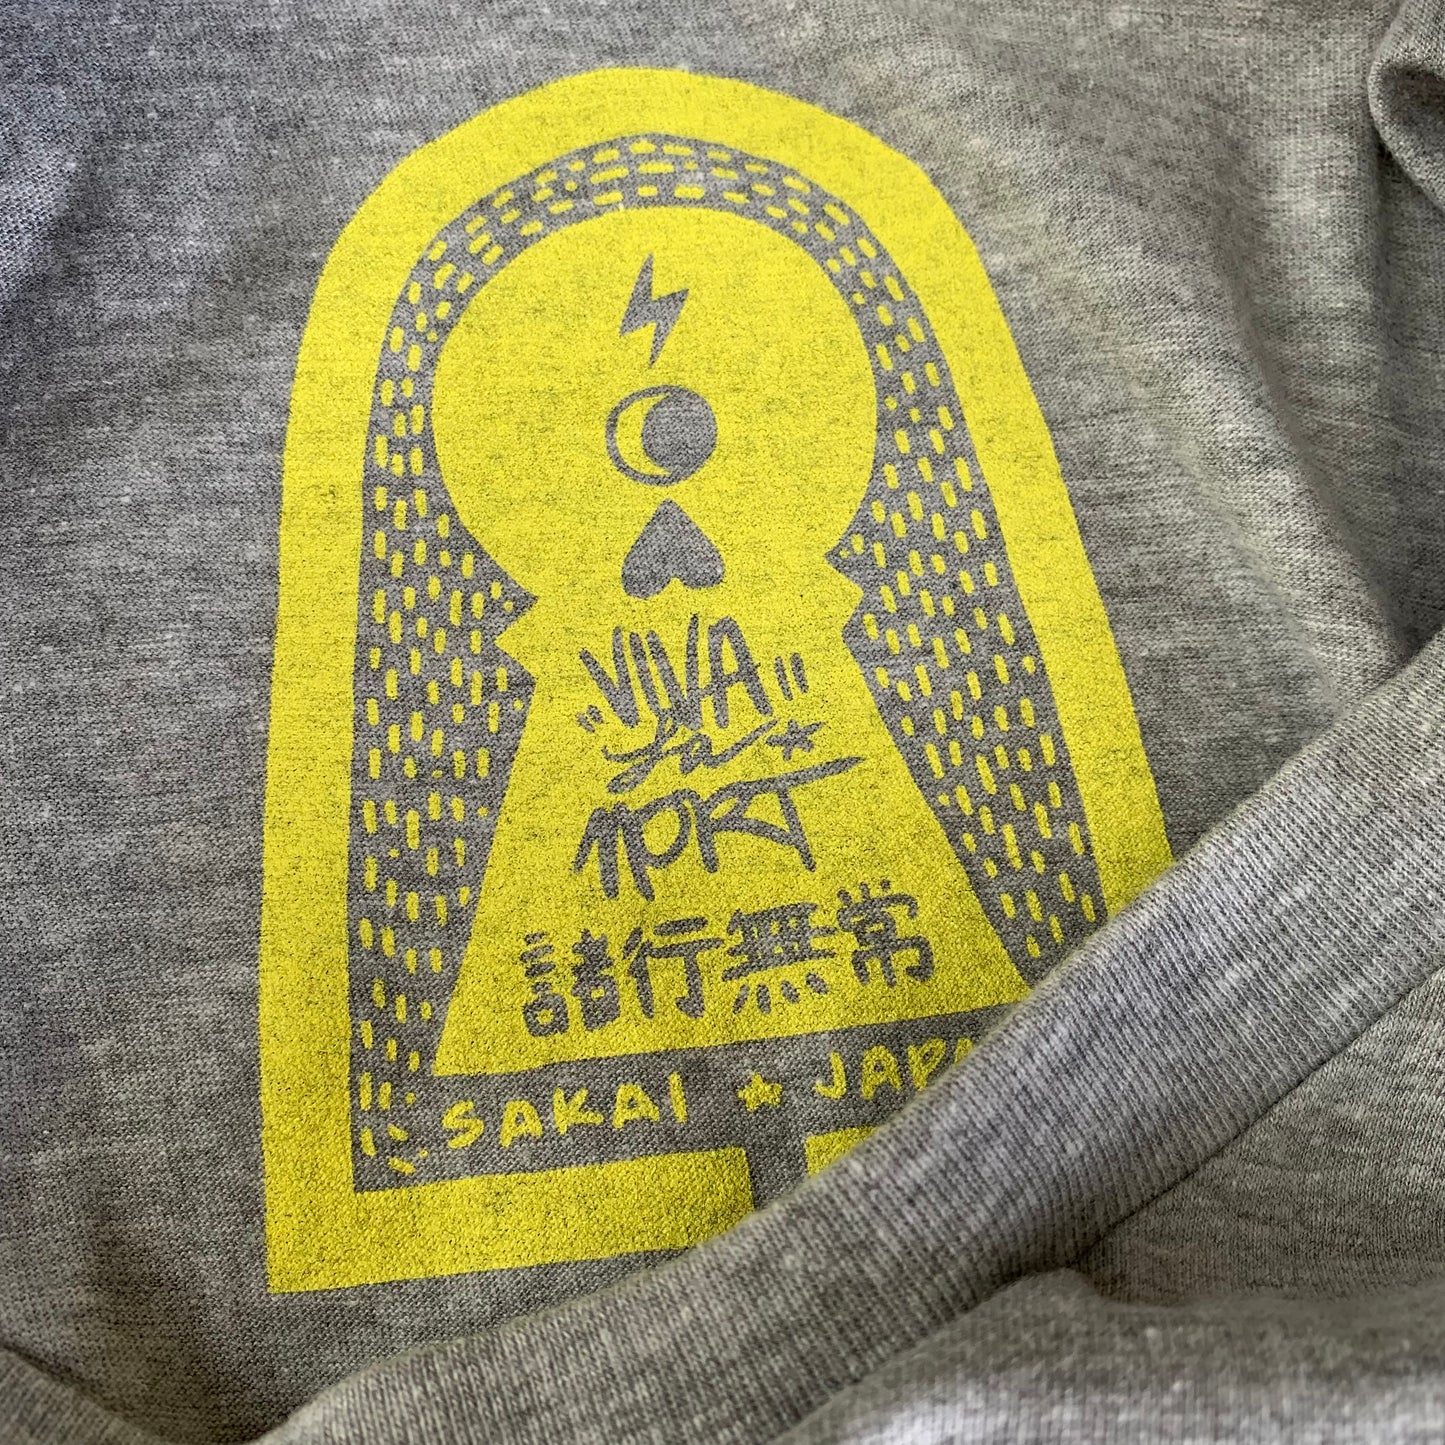 Viva La Cal Neva T-shirt